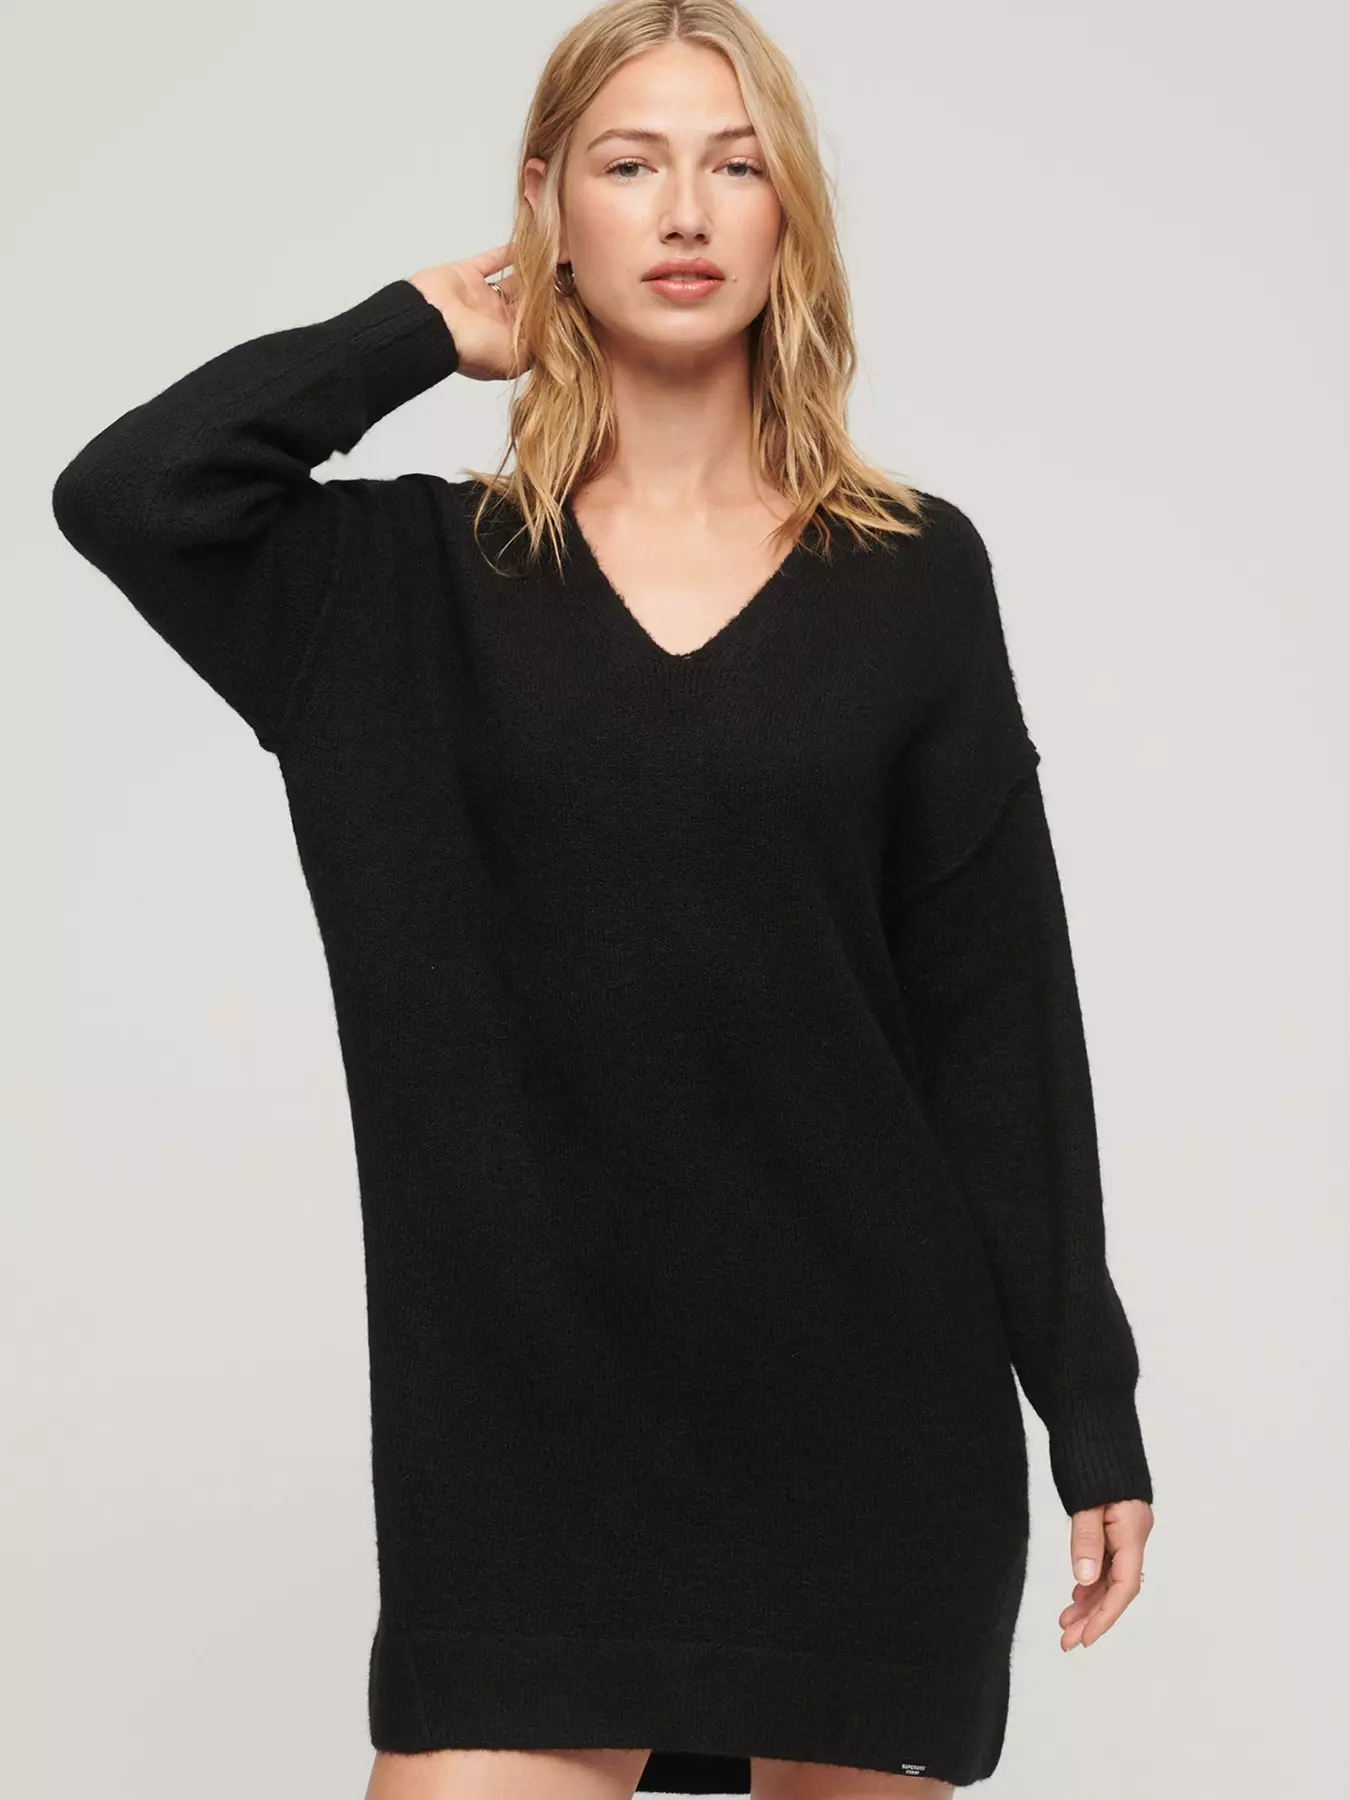 Fine knit jumper dress - black